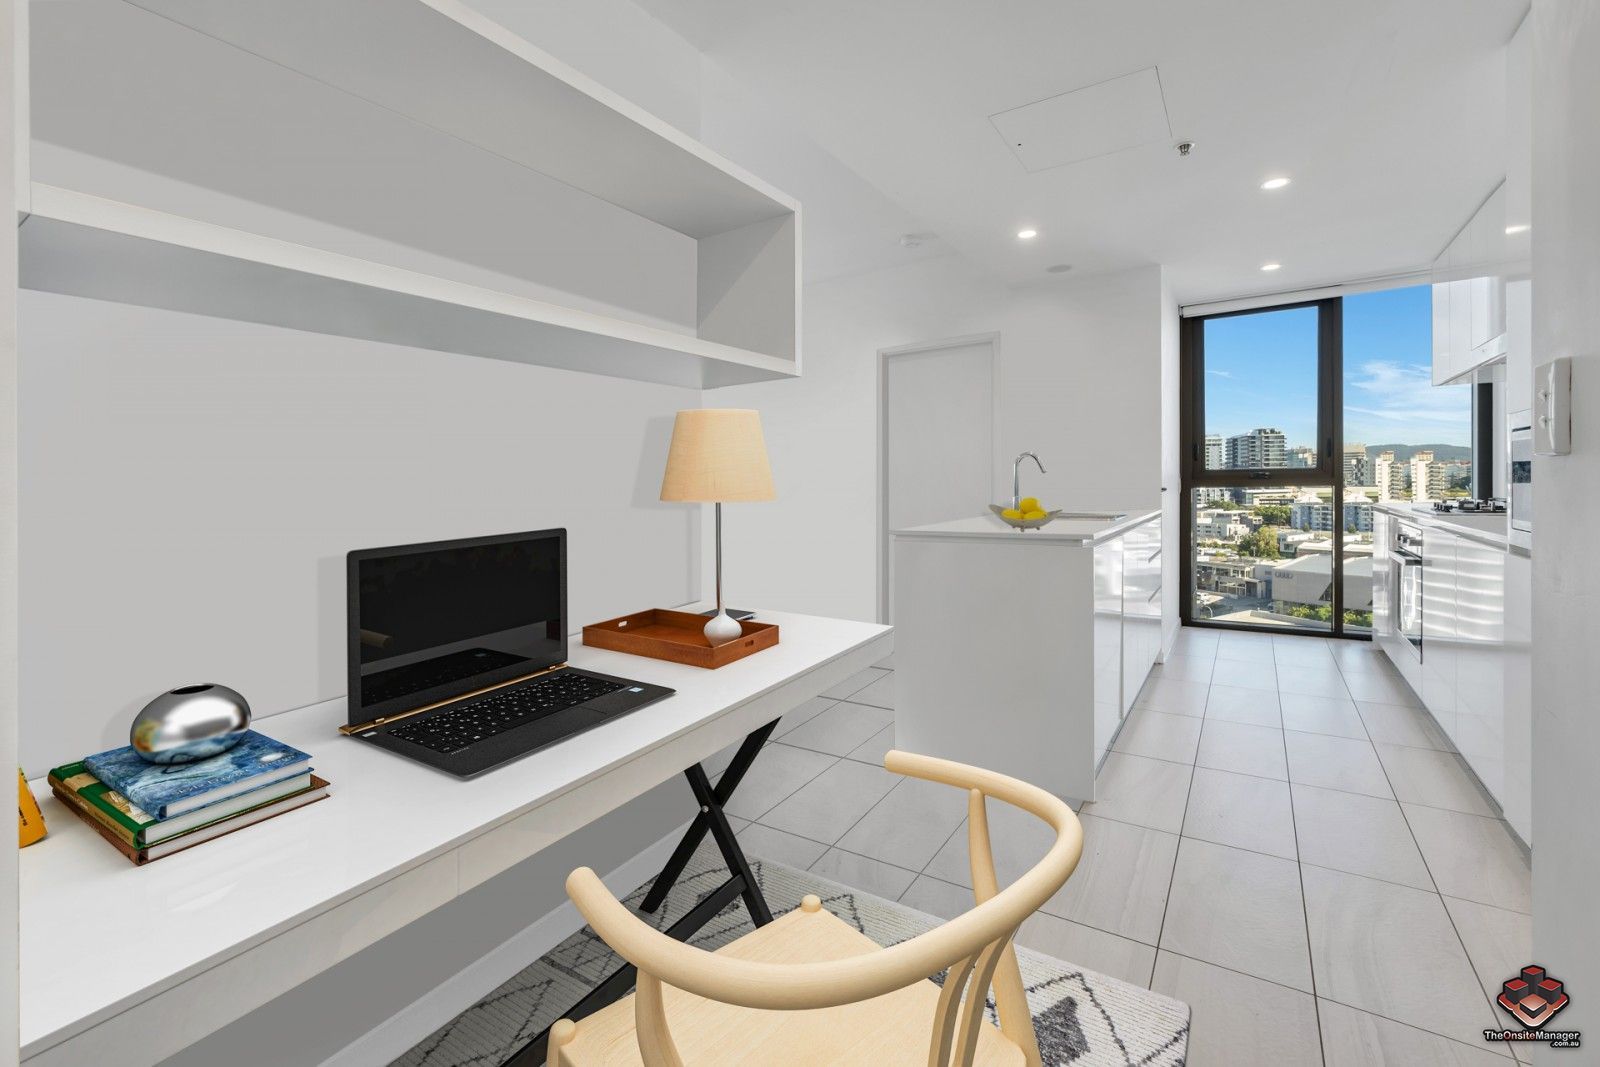 2 bedrooms Apartment / Unit / Flat in ID:21114721/10 Stratton Street NEWSTEAD QLD, 4006